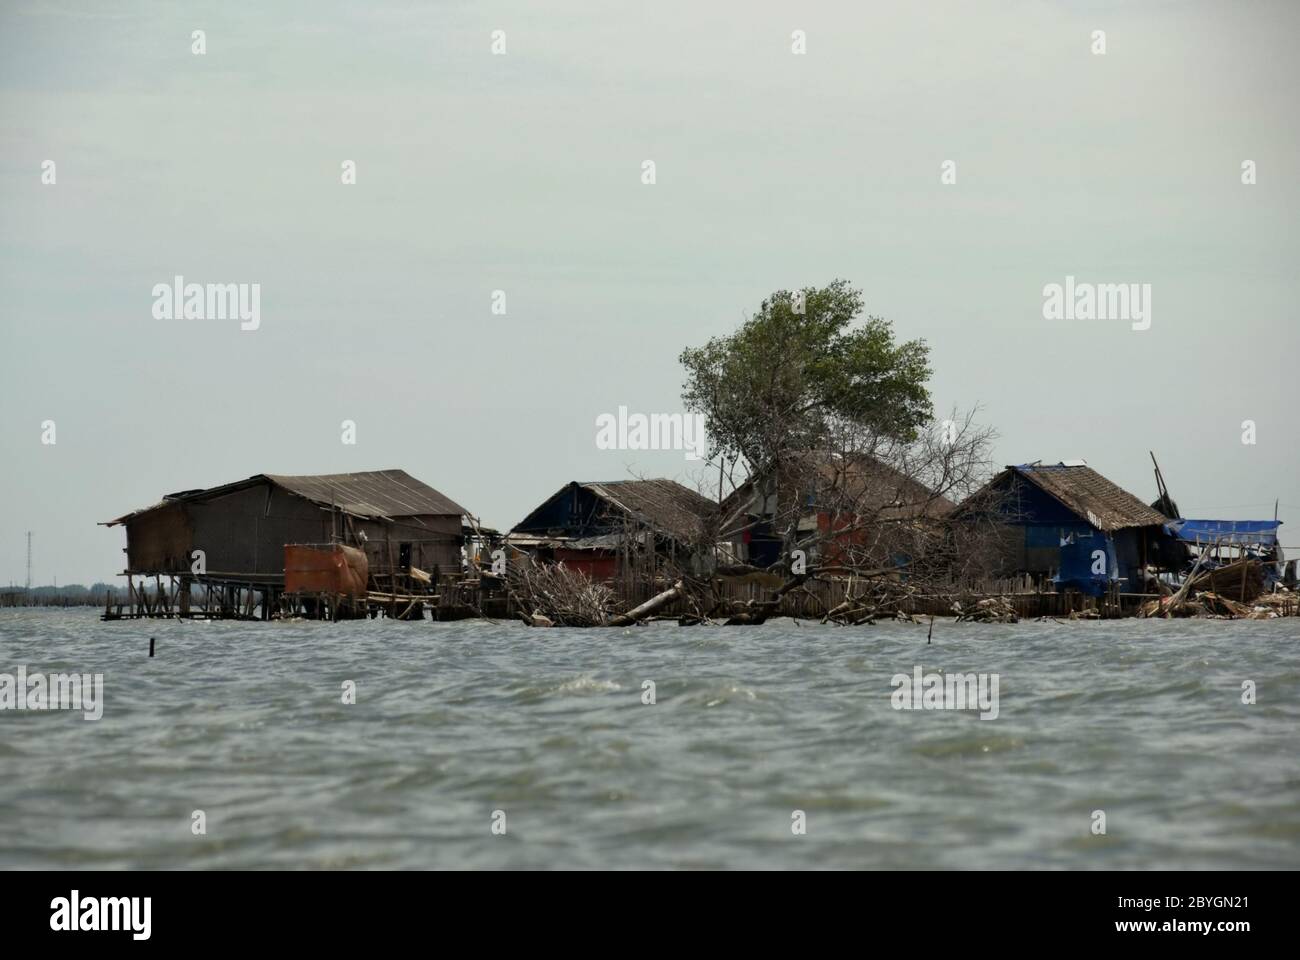 Casas de pilotes en la zona costera, en el estuario del canal de inundaciones de Yakarta que está en construcción (2008). Foto de stock